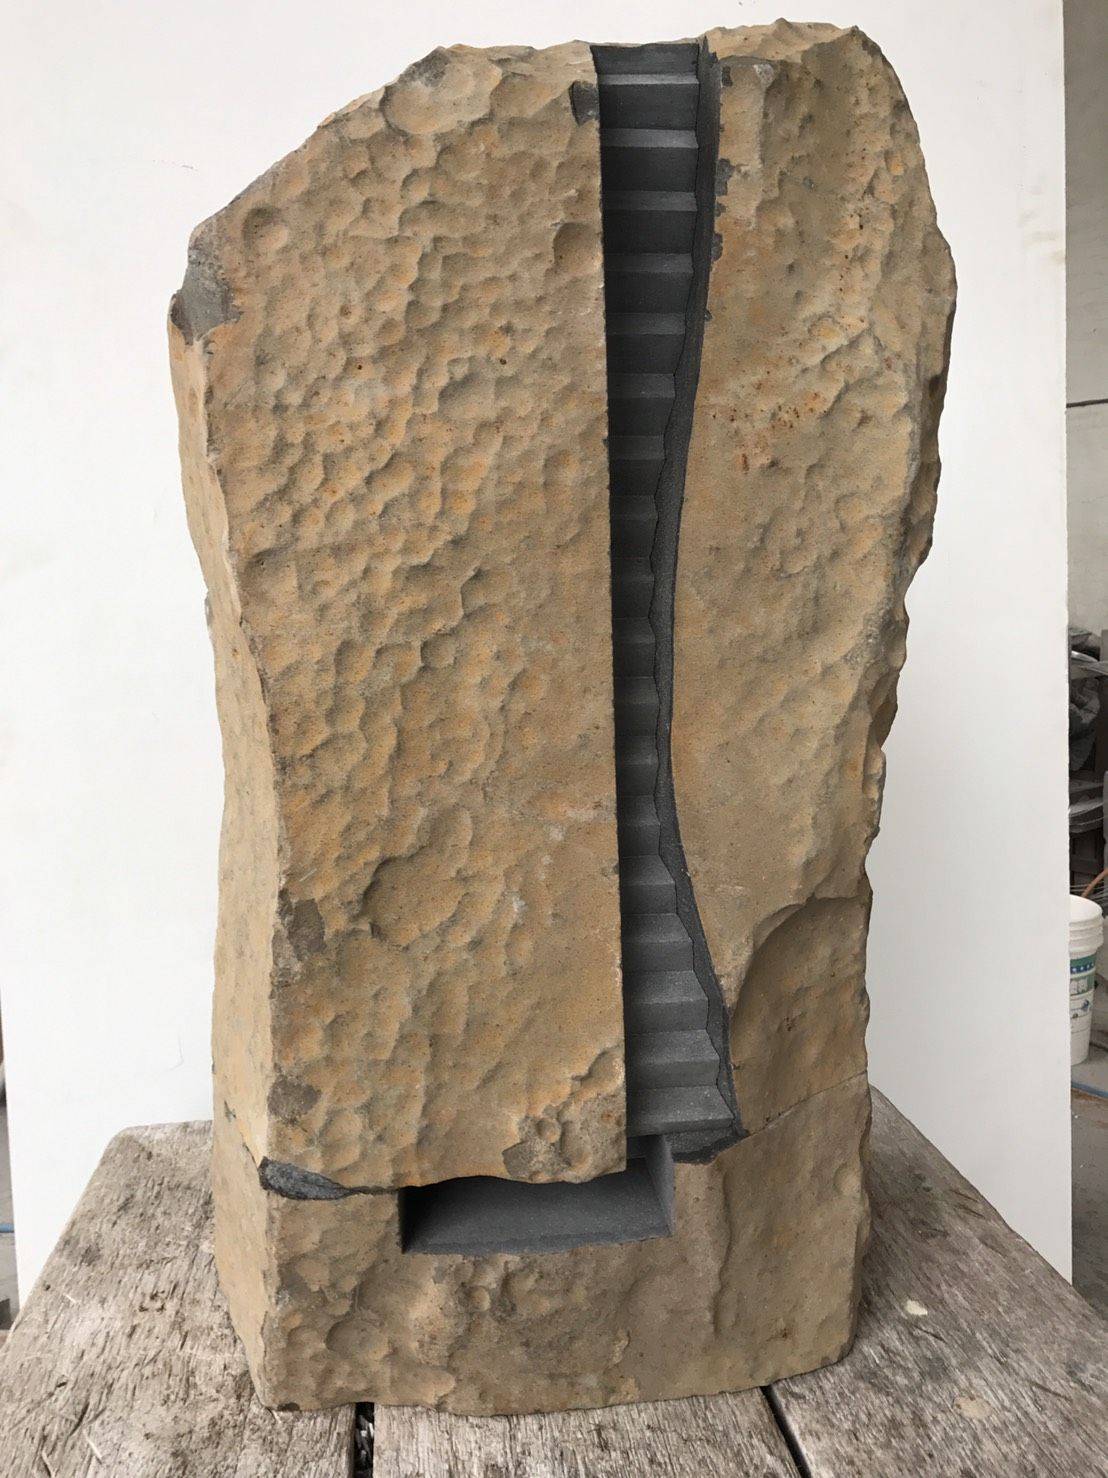 黎志文，山水，2018，玄武岩，78x34x28cm。